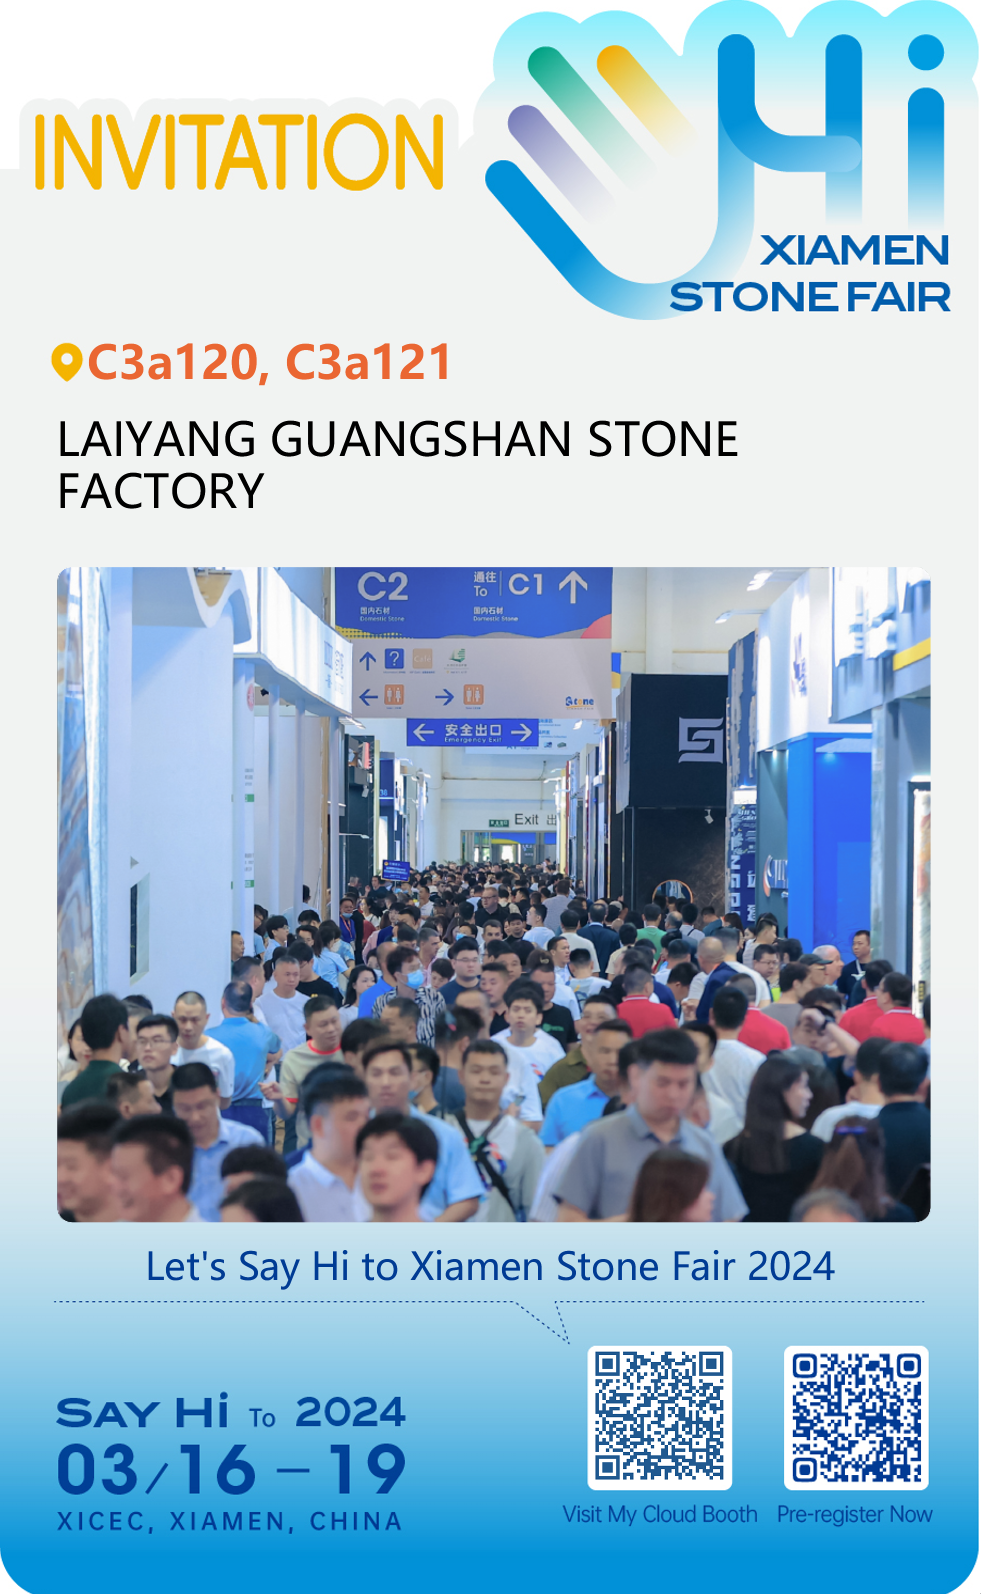 La 24a fiera internazionale della pietra di China Xiamen (numero del nostro stand: C3a120 e C3a121)